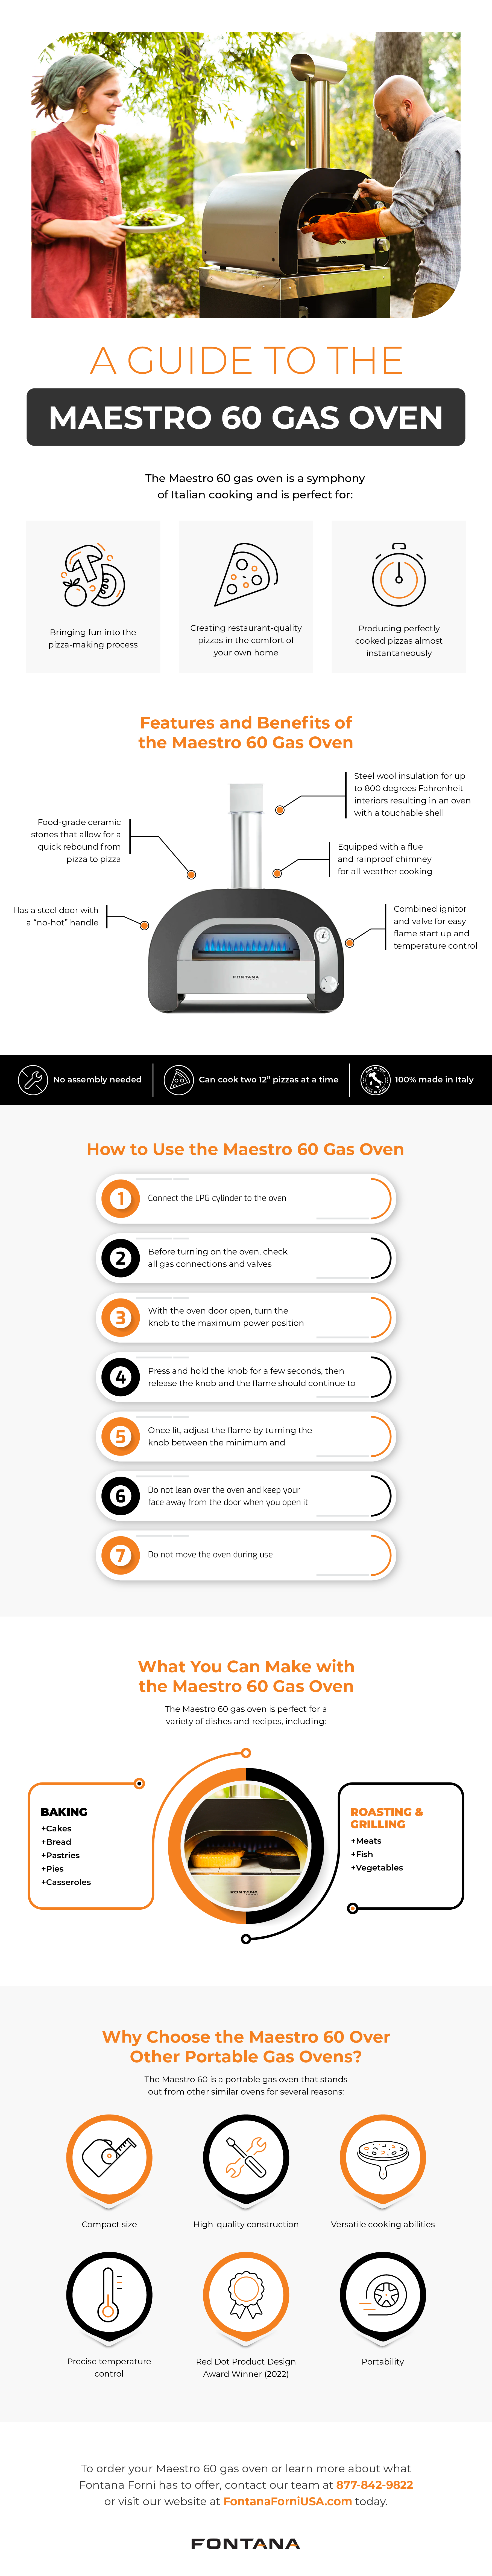 Maestro 60 Gas Oven Guide